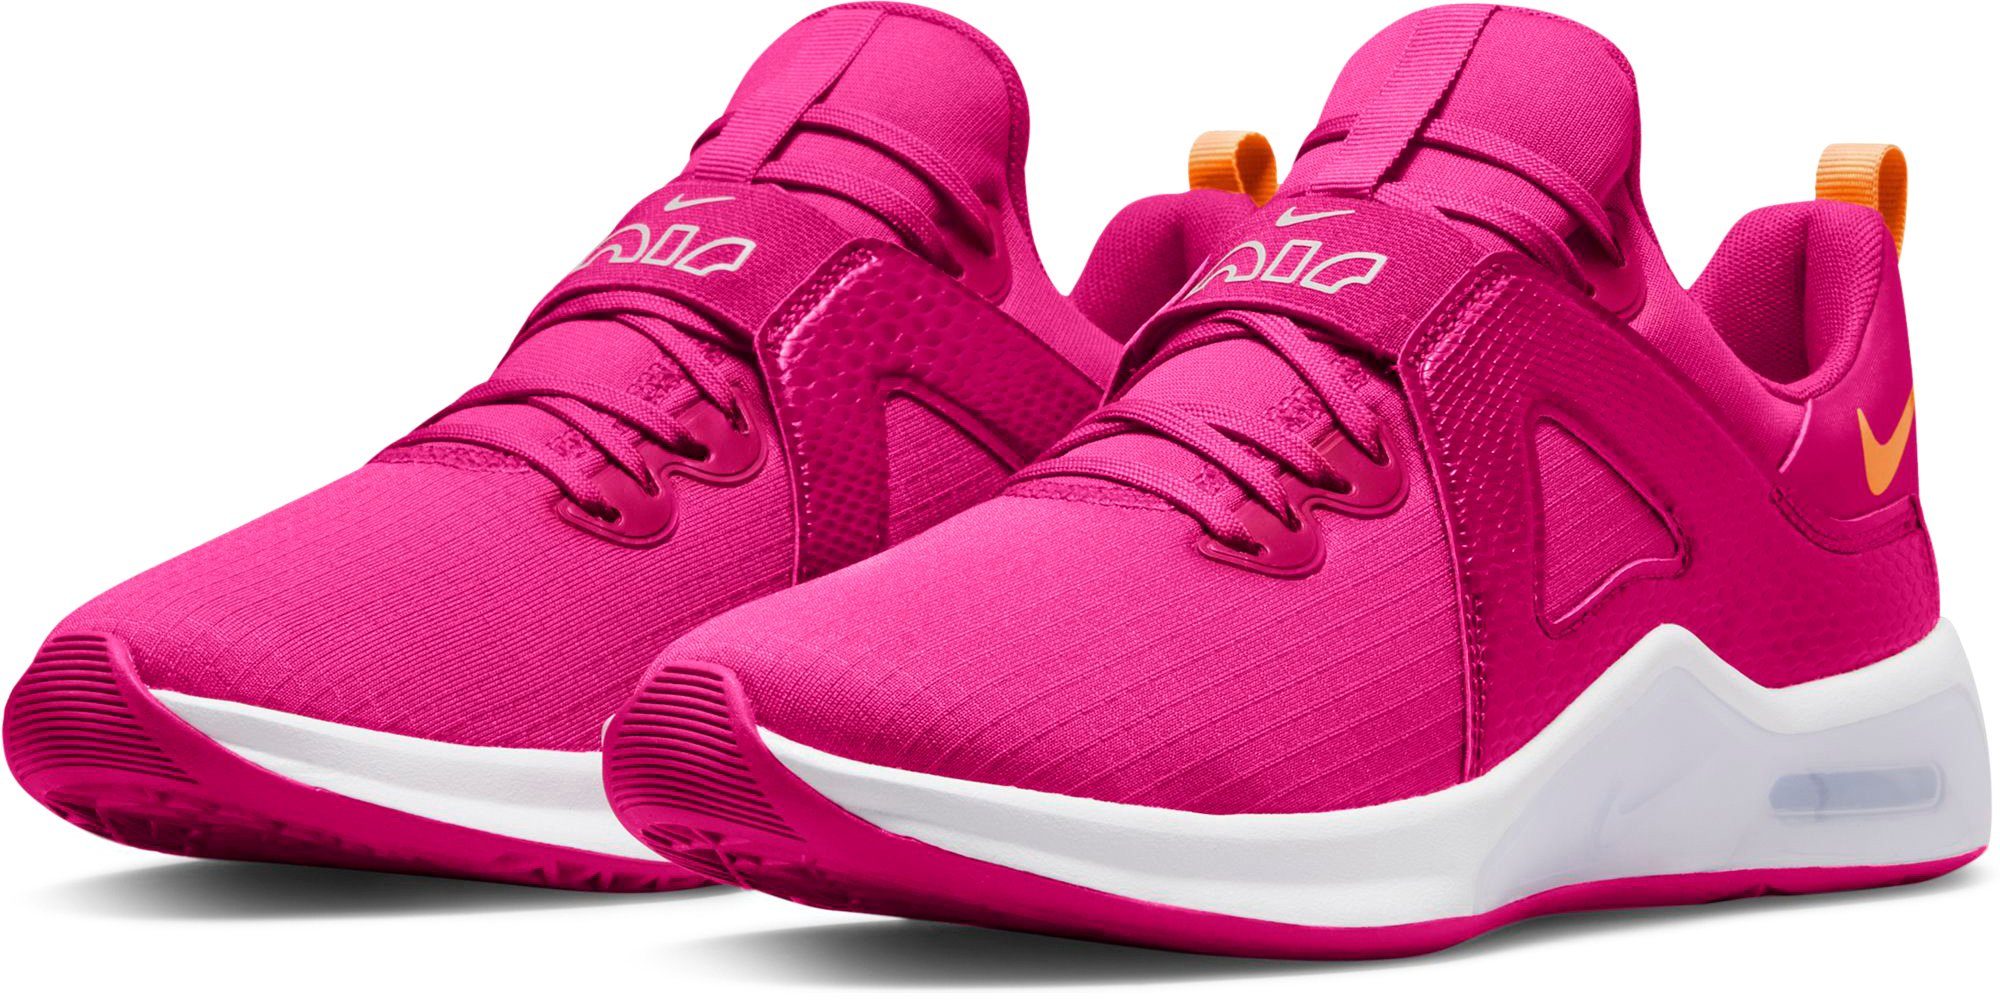 Rosa Damenschuhe online kaufen » Pinke Schuhe Damen-| OTTO